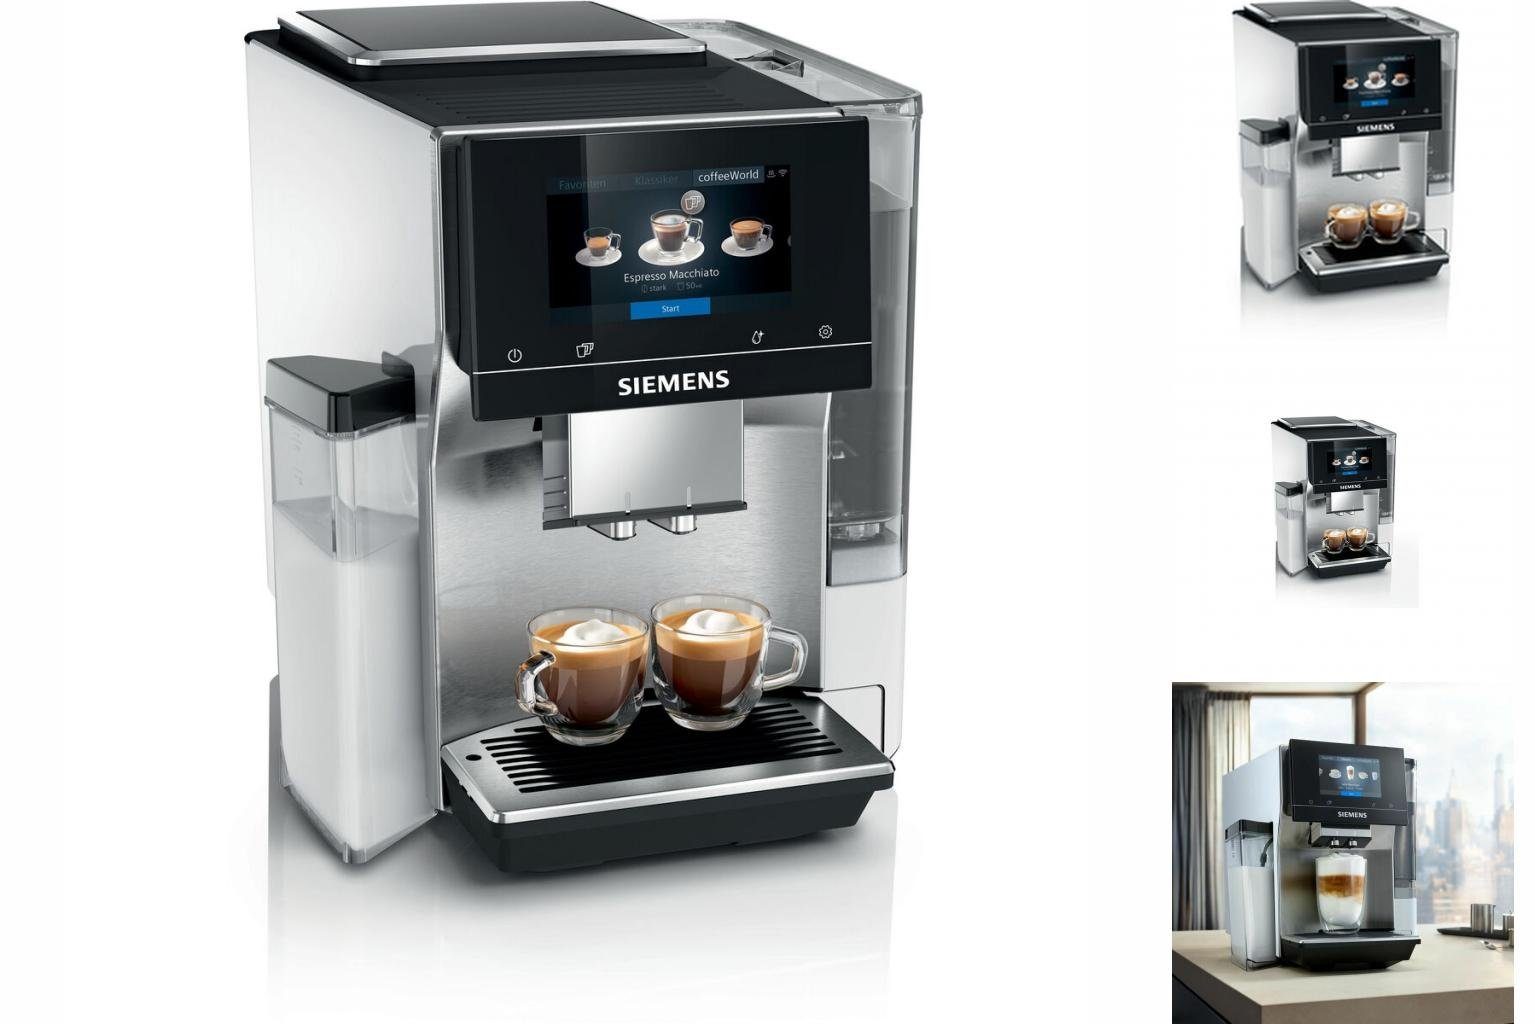 SIEMENS Kaffeevollautomat Superautomatische Kaffeemaschine AG W TQ705R03 Siemens 1500